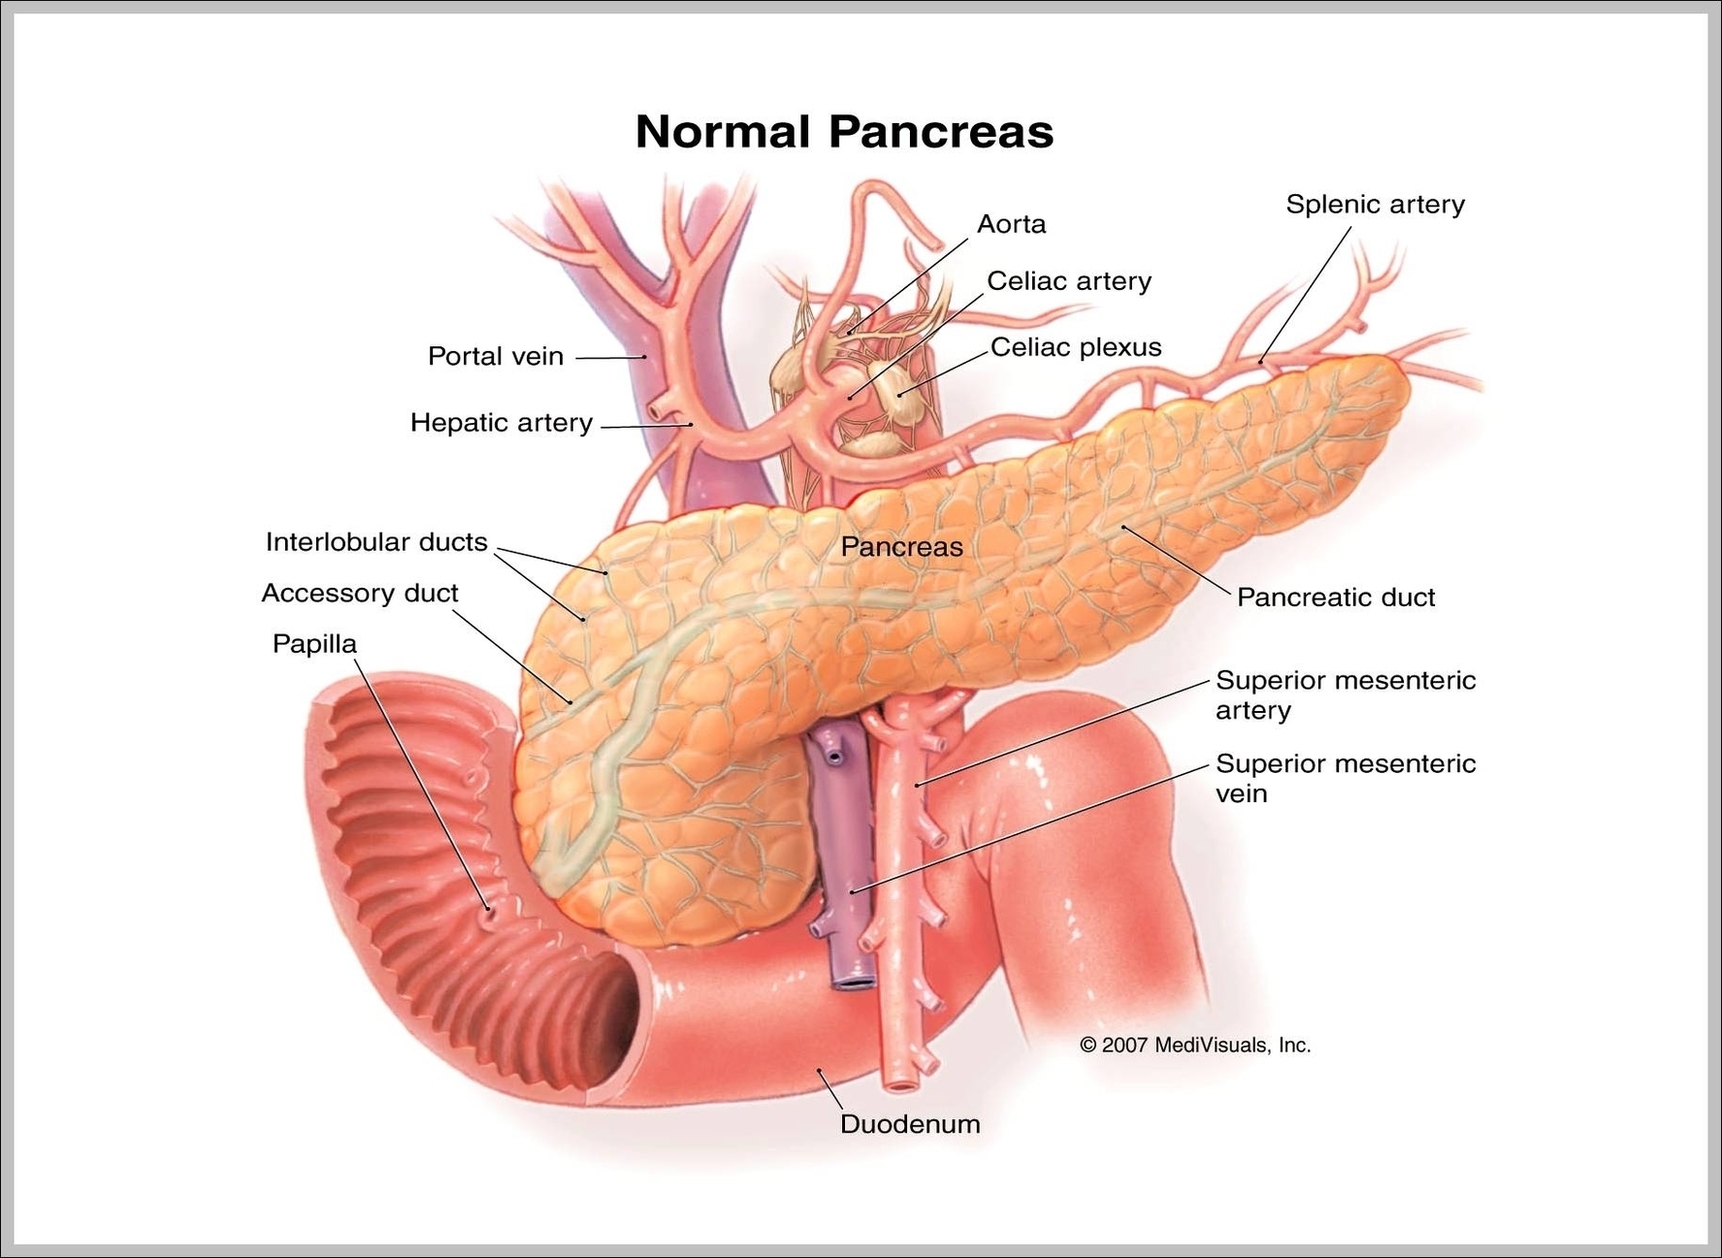 Pancreas Image